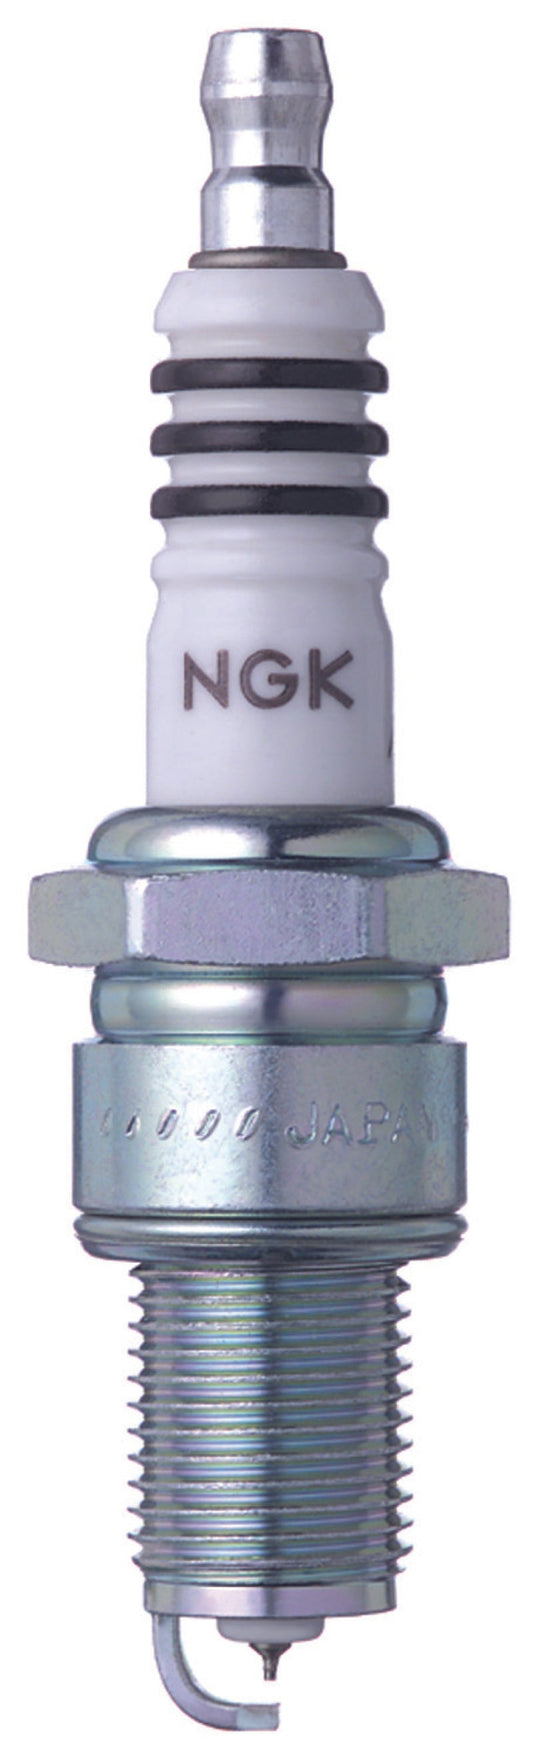 NGK - IX Iridium Spark Plug Box of 4 (BPR8EIX)